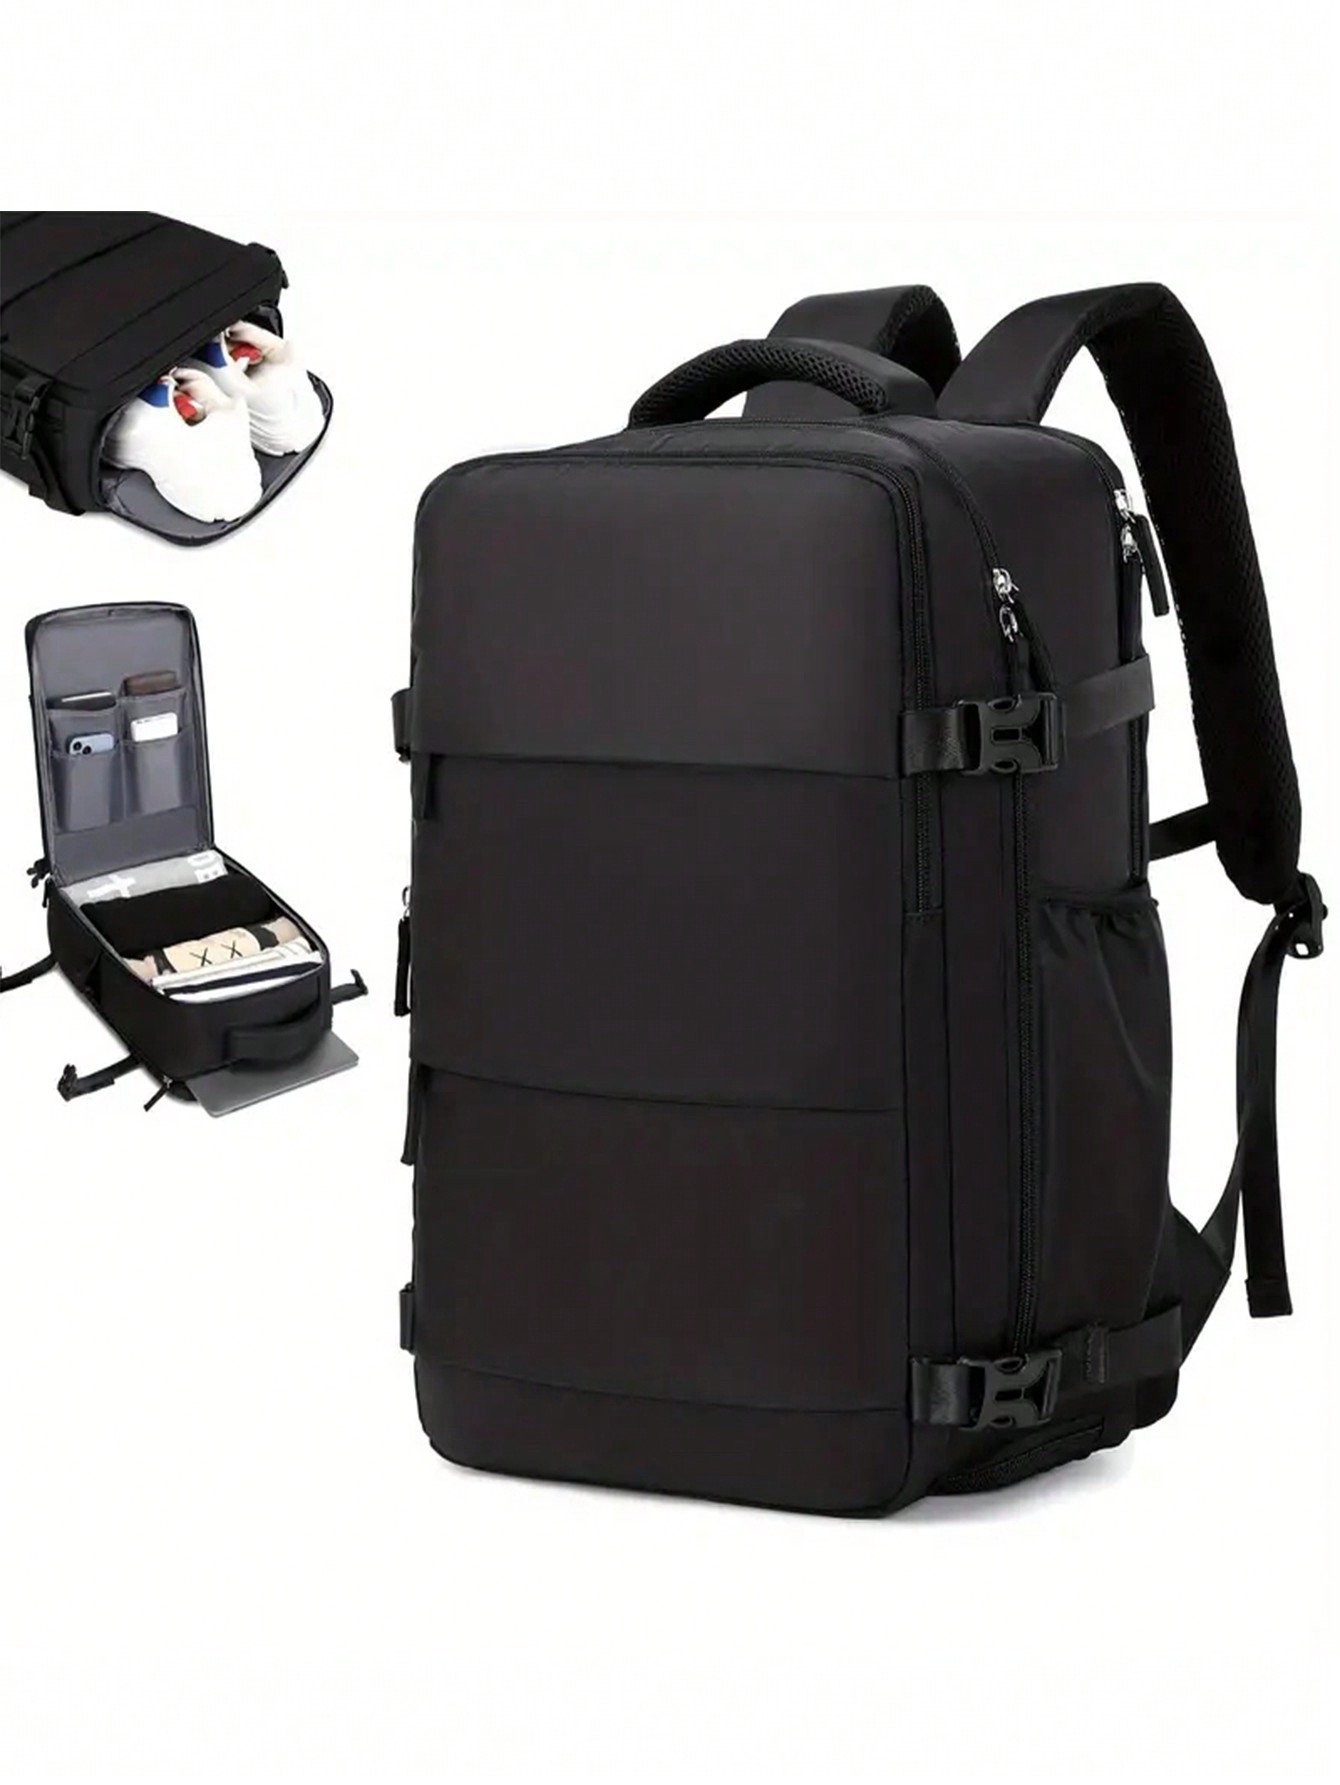 Розовая многофункциональная дорожная сумка большой емкости с молнией сверху, черный рюкзак дорожный унисекс с usb портом для зарядки и отделением для ноутбука